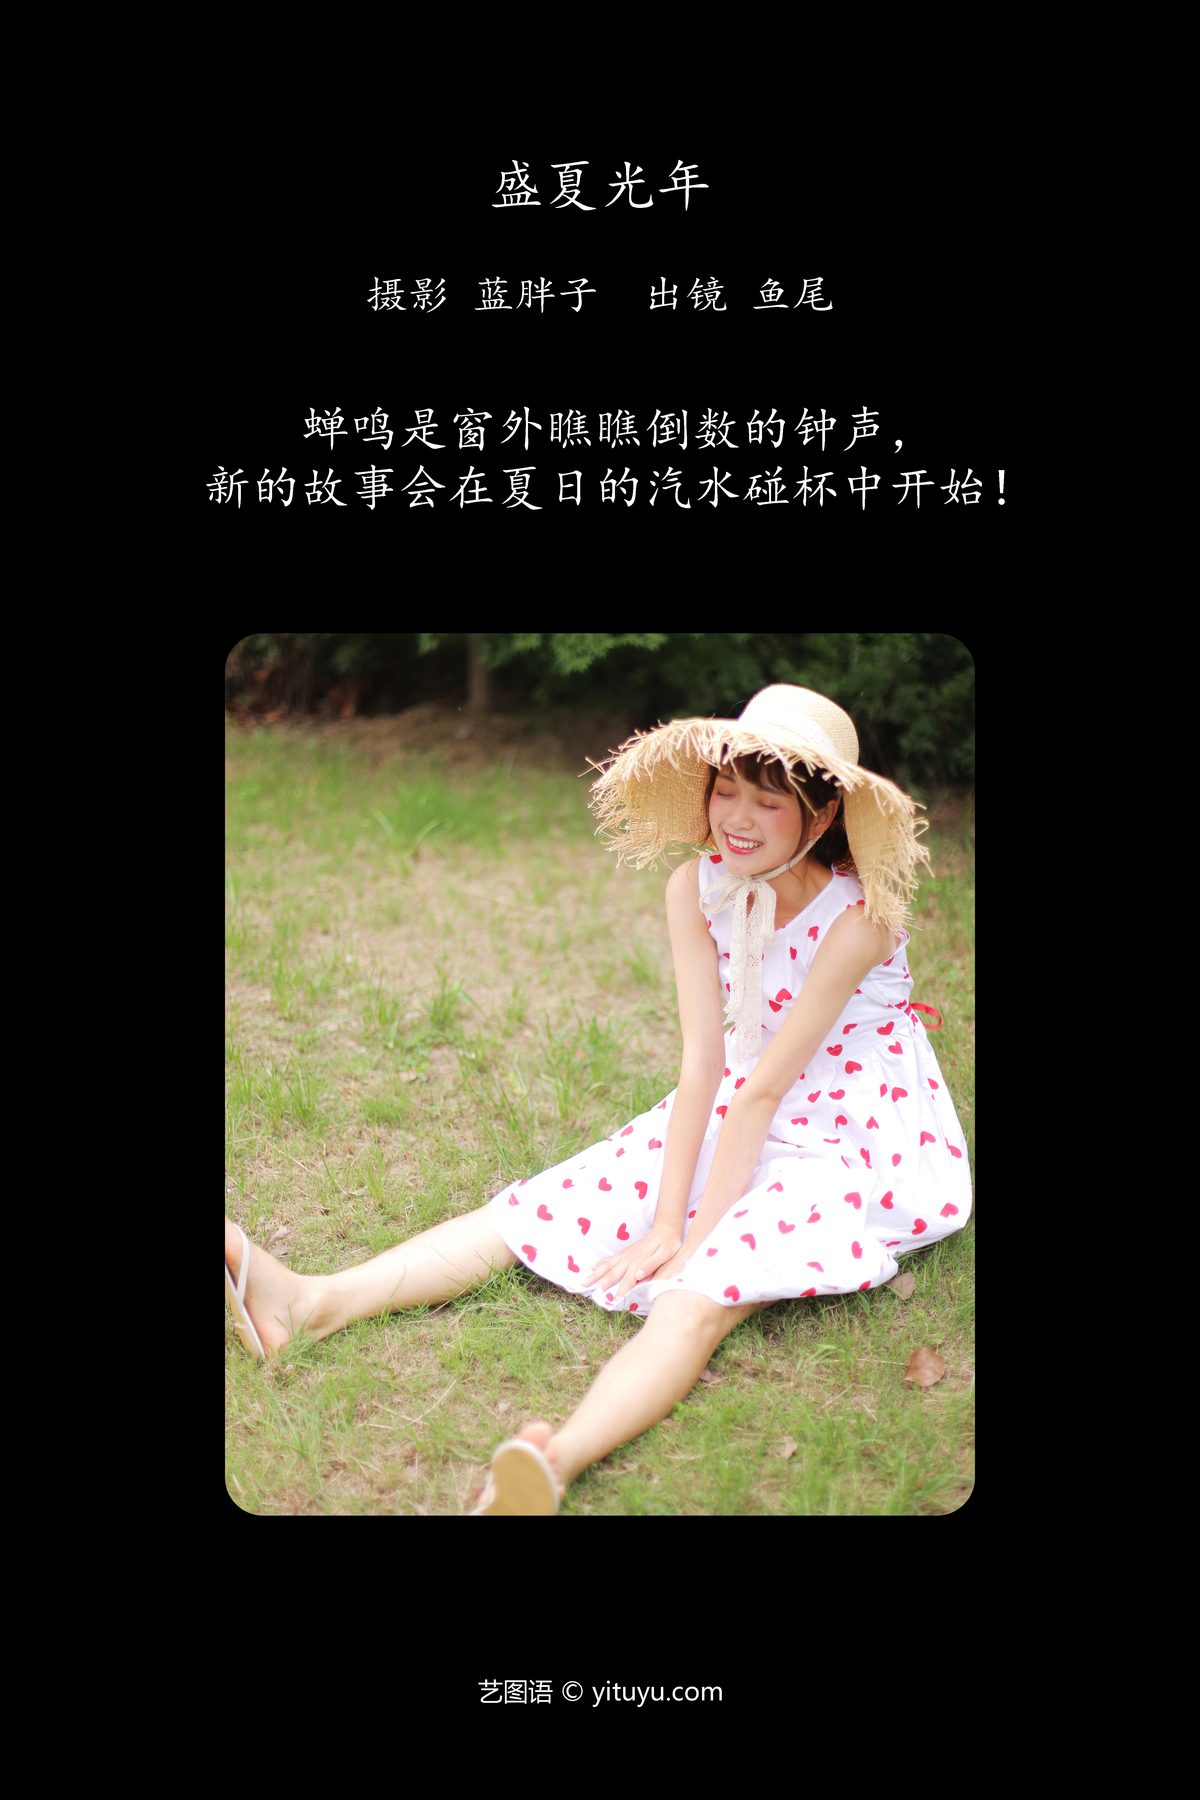 YiTuYu艺图语 Vol 5752 Yi Tiao Yu Wei 0002 9255173010.jpg